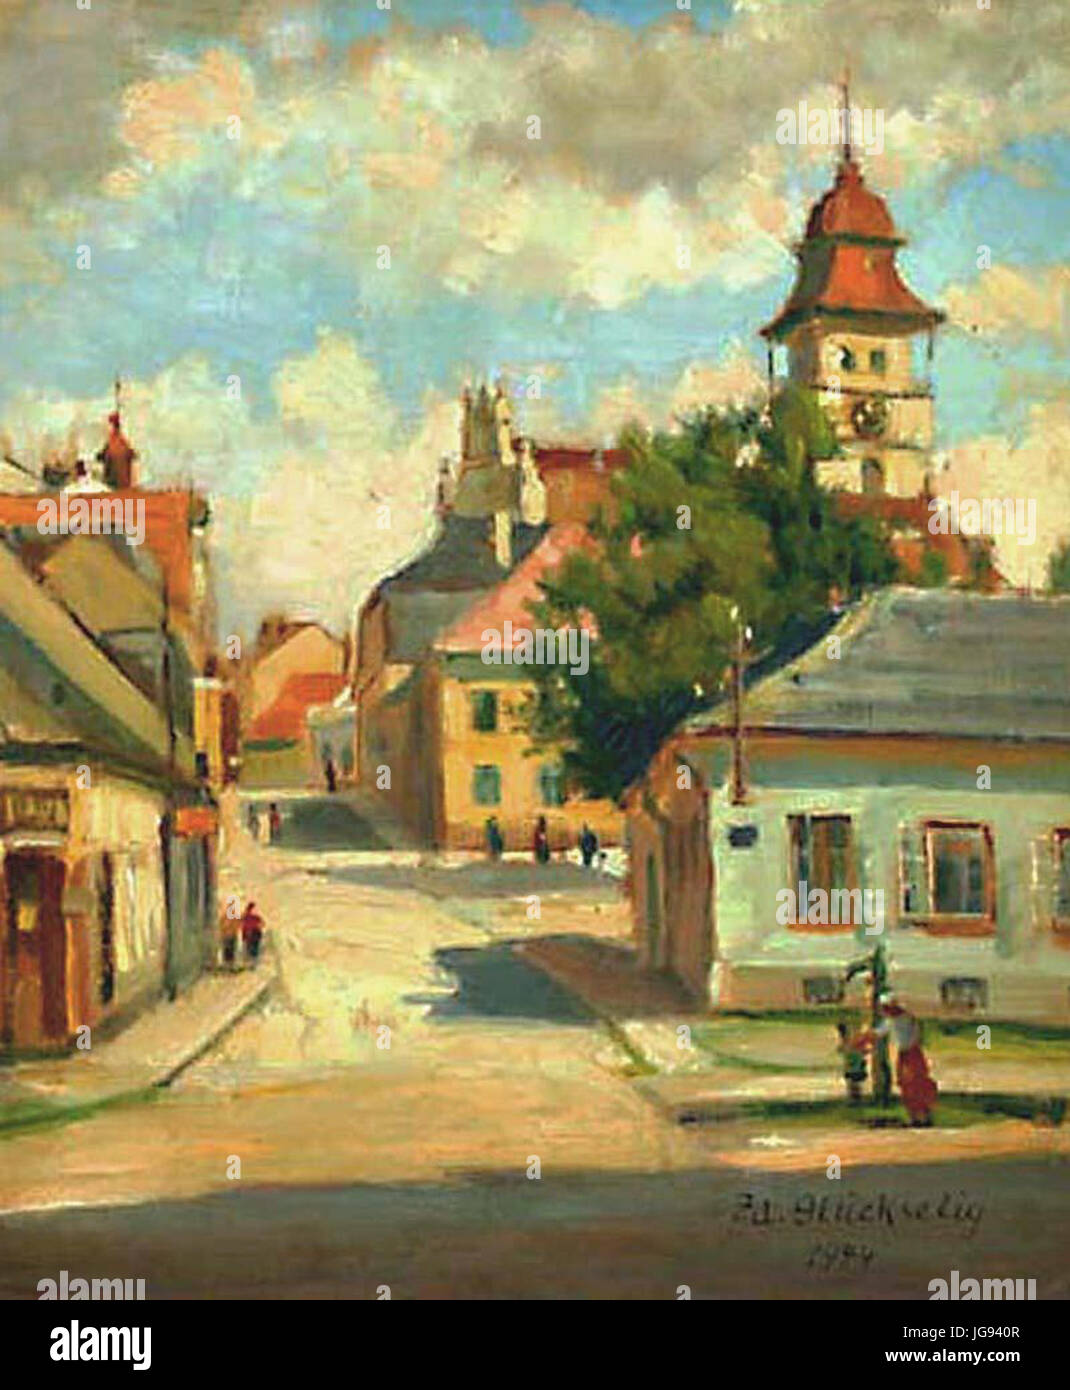 Zdeněk Glückselig (1883 - 1945) - Ulice ke kostelu (1944) Stock Photo